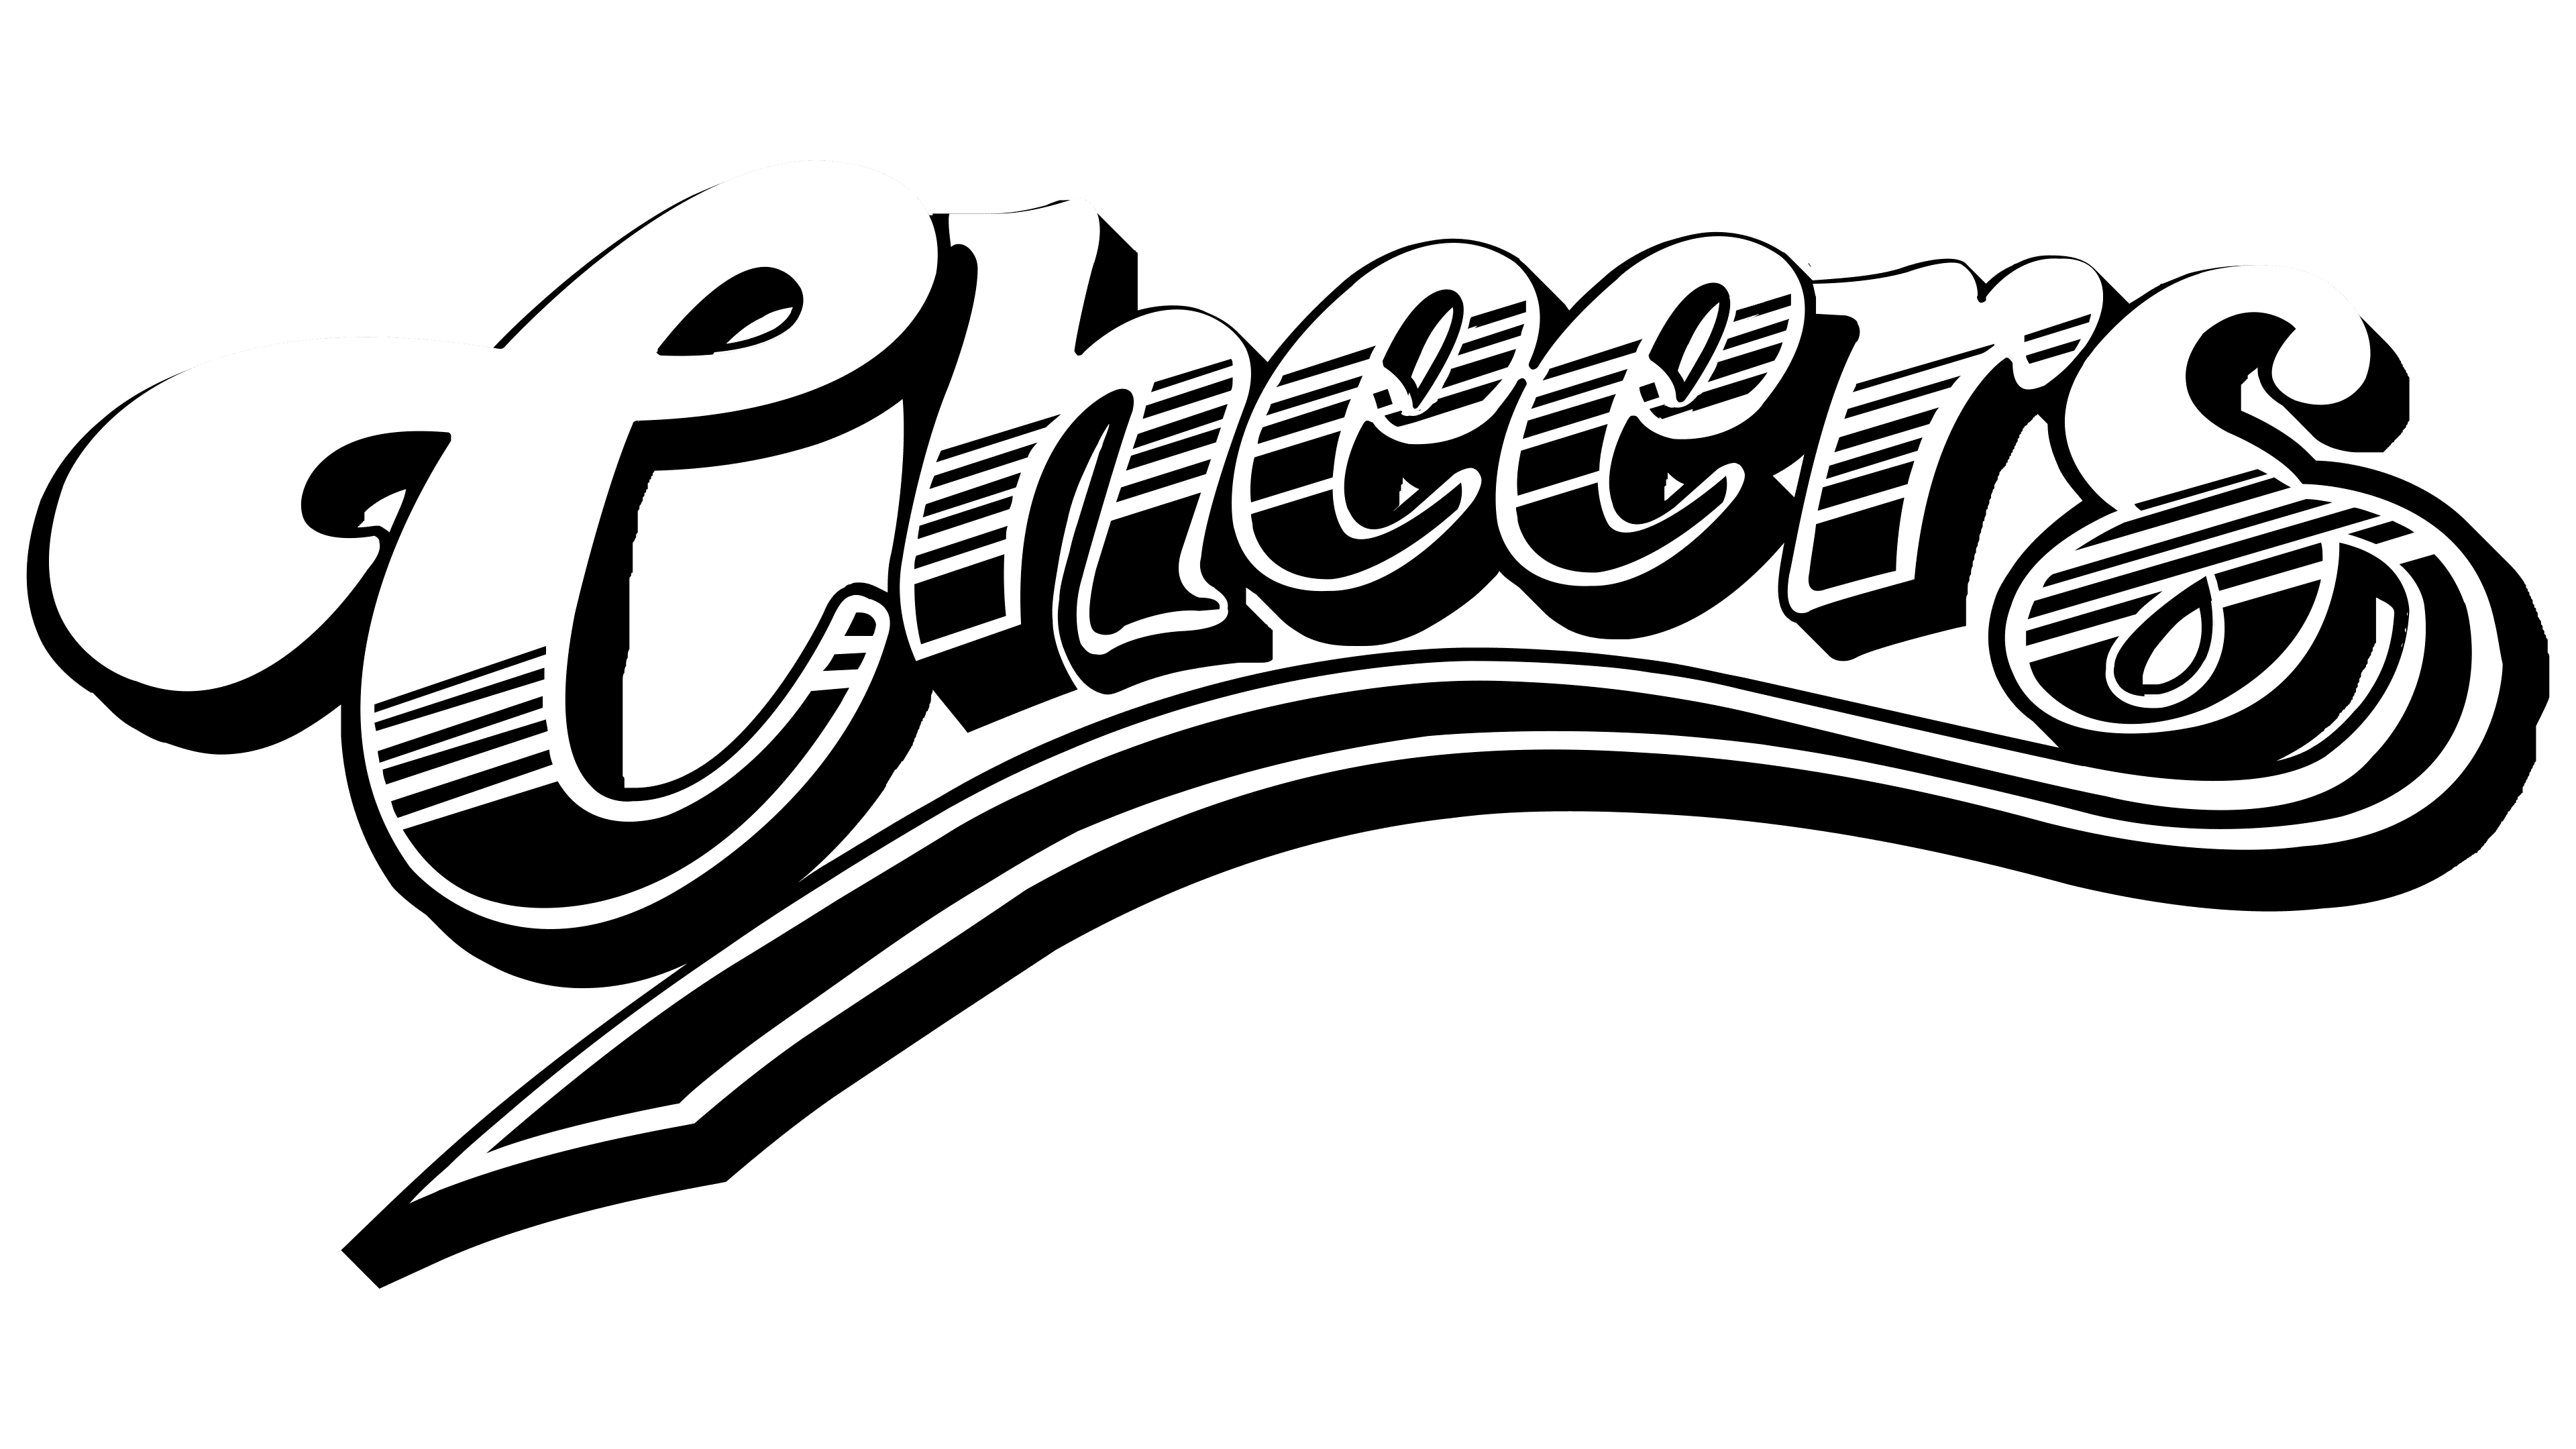 cheers, Beer oktoberfest logo symbol 8680401 Vector Art at Vecteezy